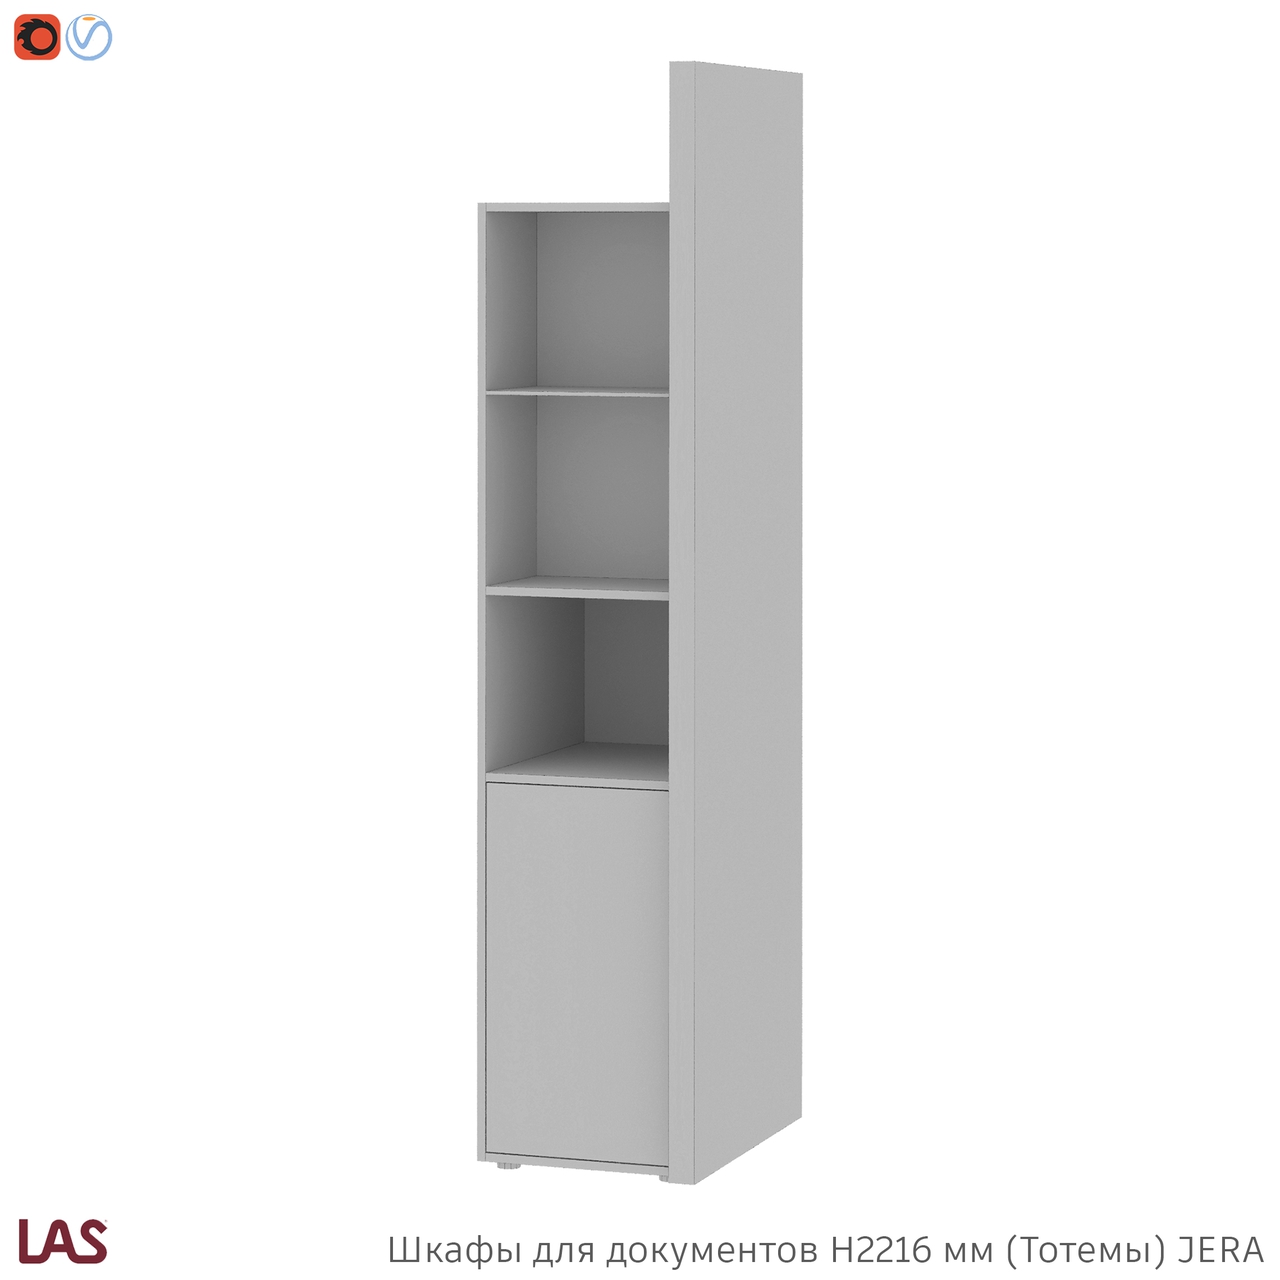 Превью G 3D-модели тотемных шкафов для кабинета LAS Jera 159965